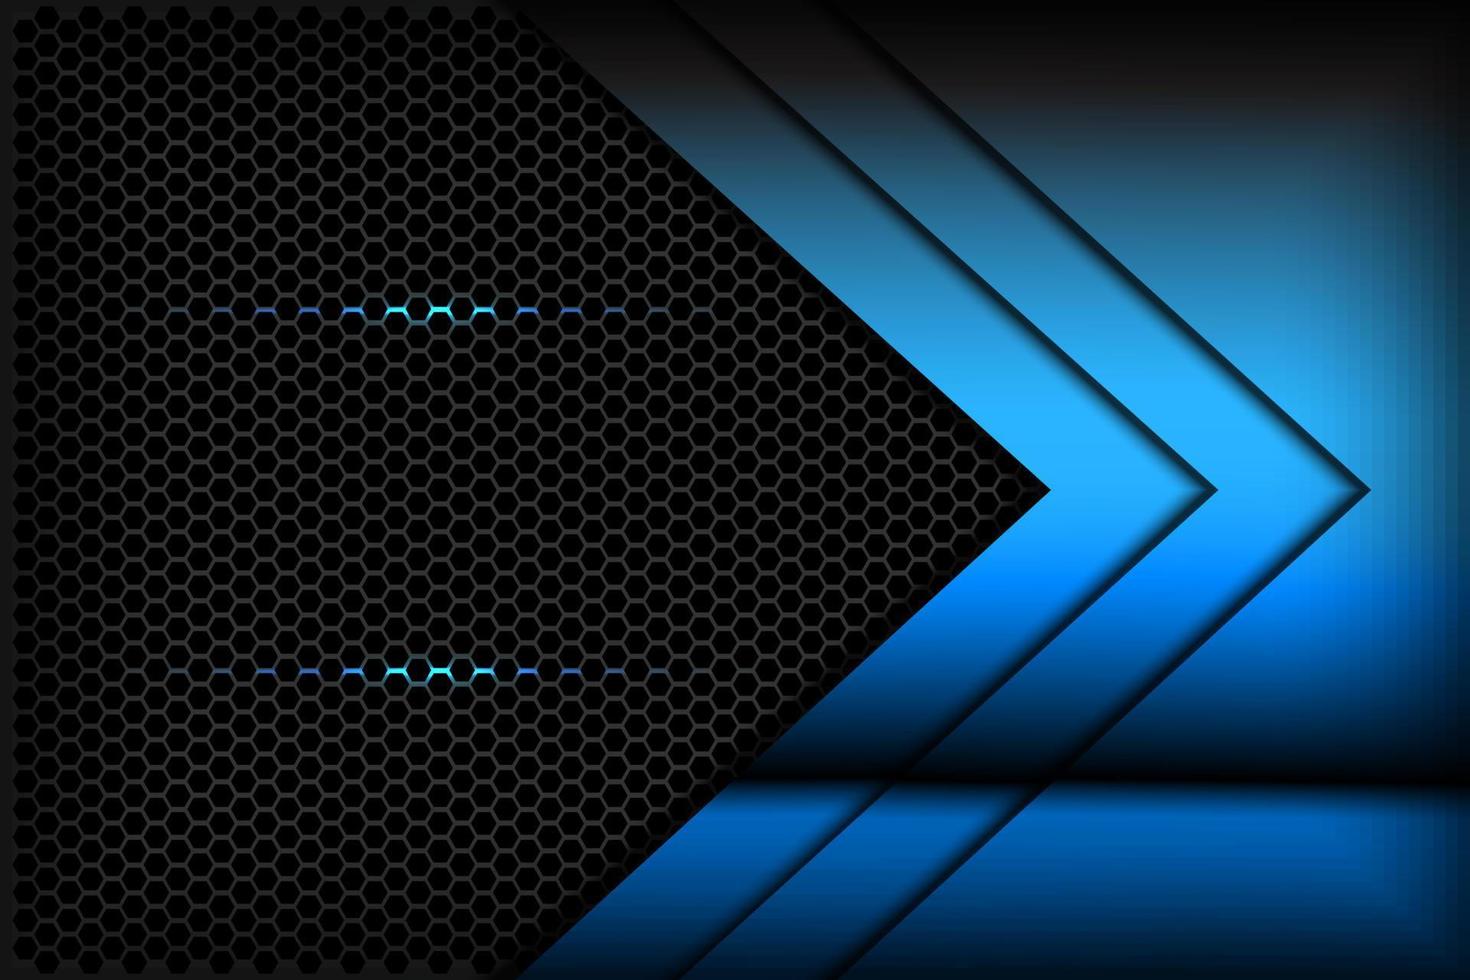 seta gradiente azul abstrata em preto com malha hexagonal vetor